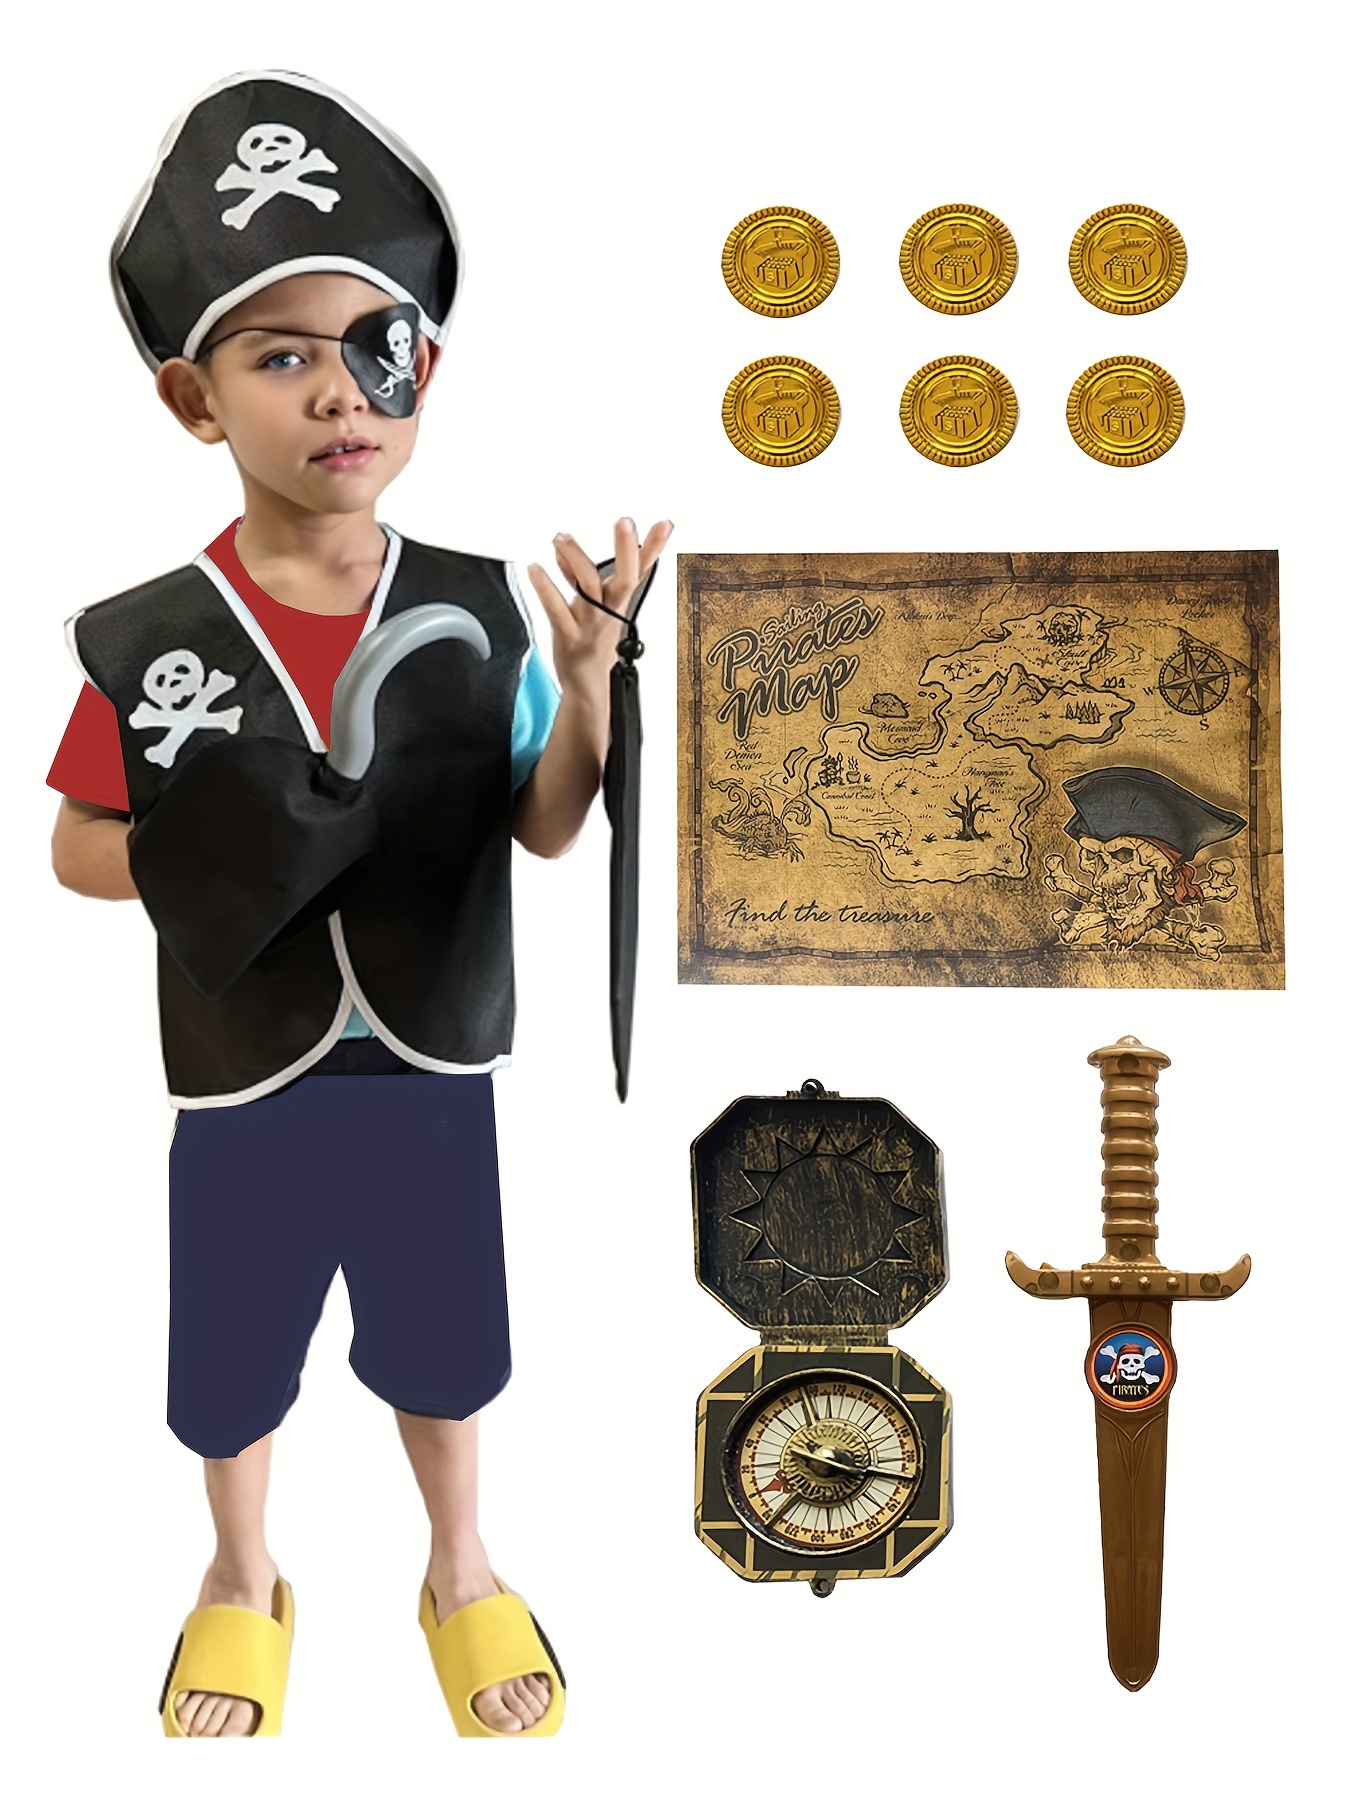 34 Pezzi Accessori per Costume da Pirata, Pirata Accessori Bambini Set con  8 Cappelli da Pirata